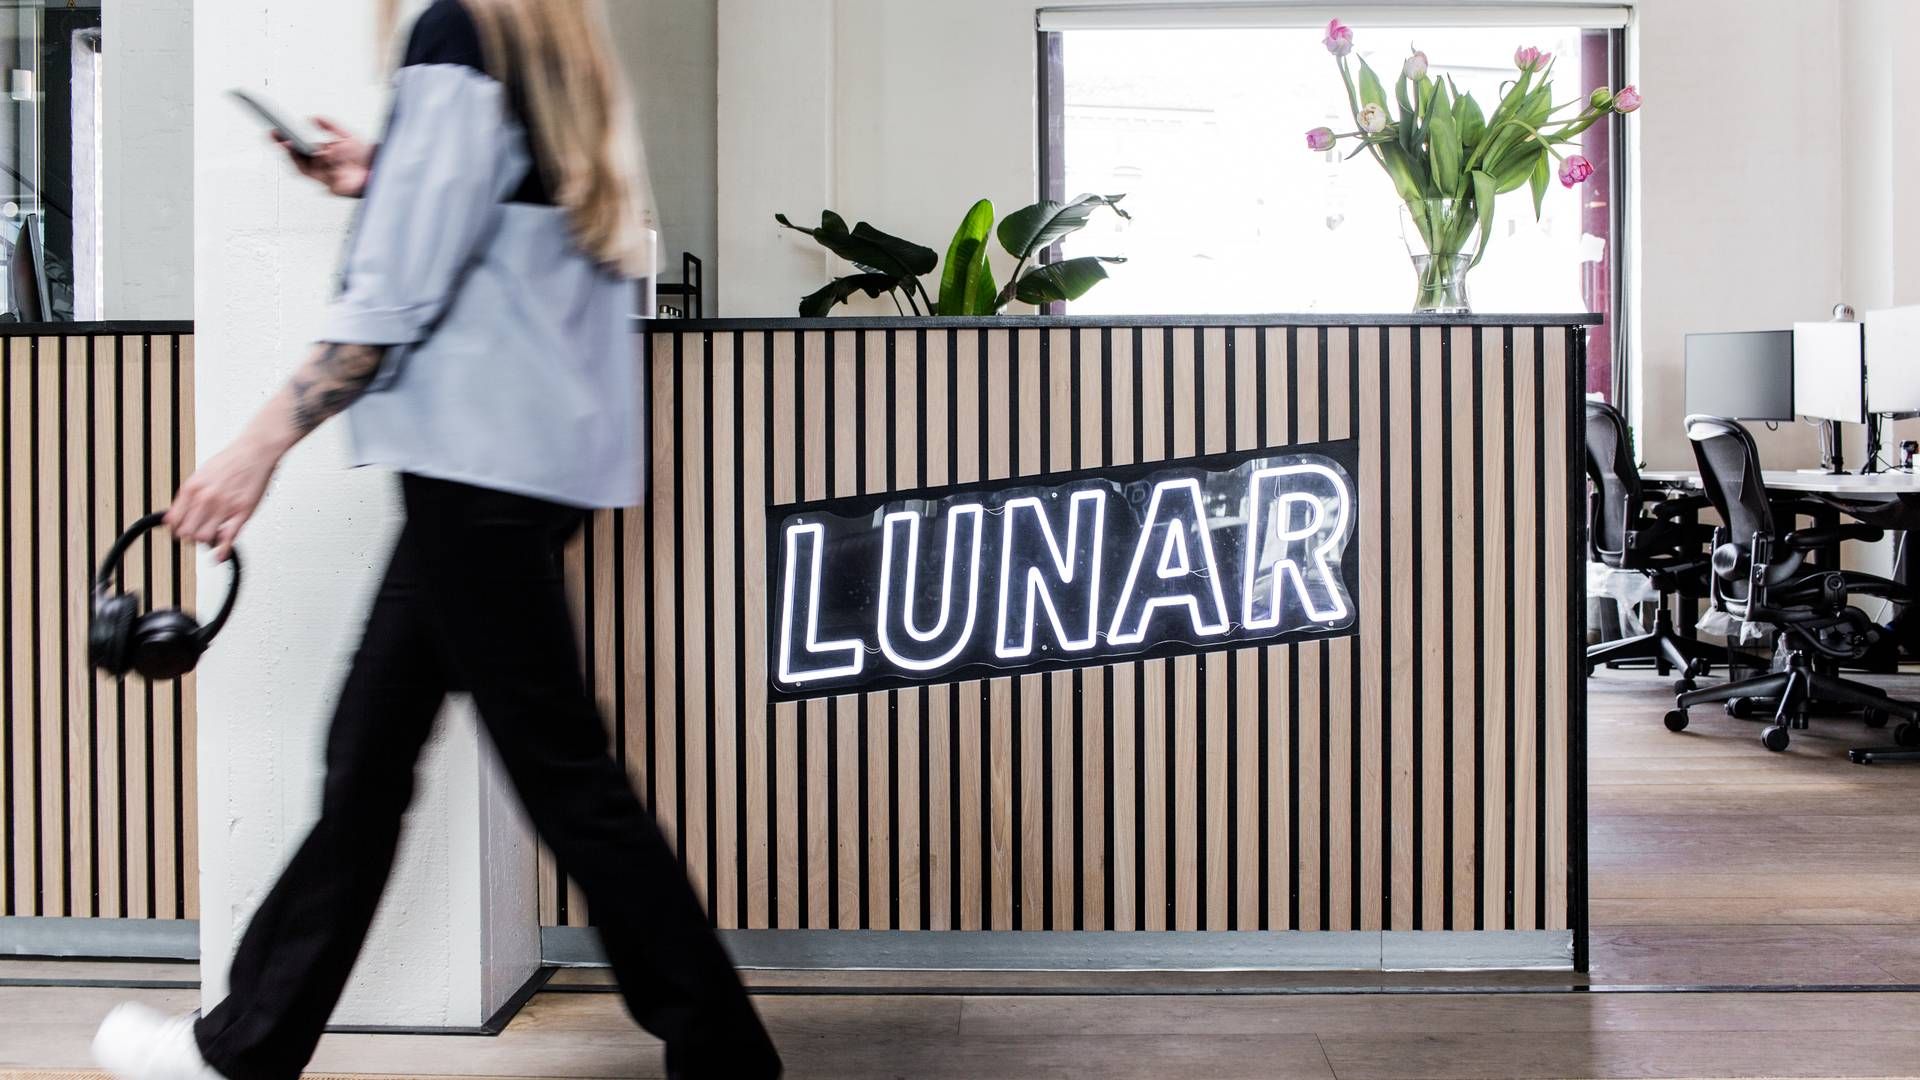 Lunar henter ny kapital blandt virksomhedens ejere. | Foto: Pr/lunar Bank